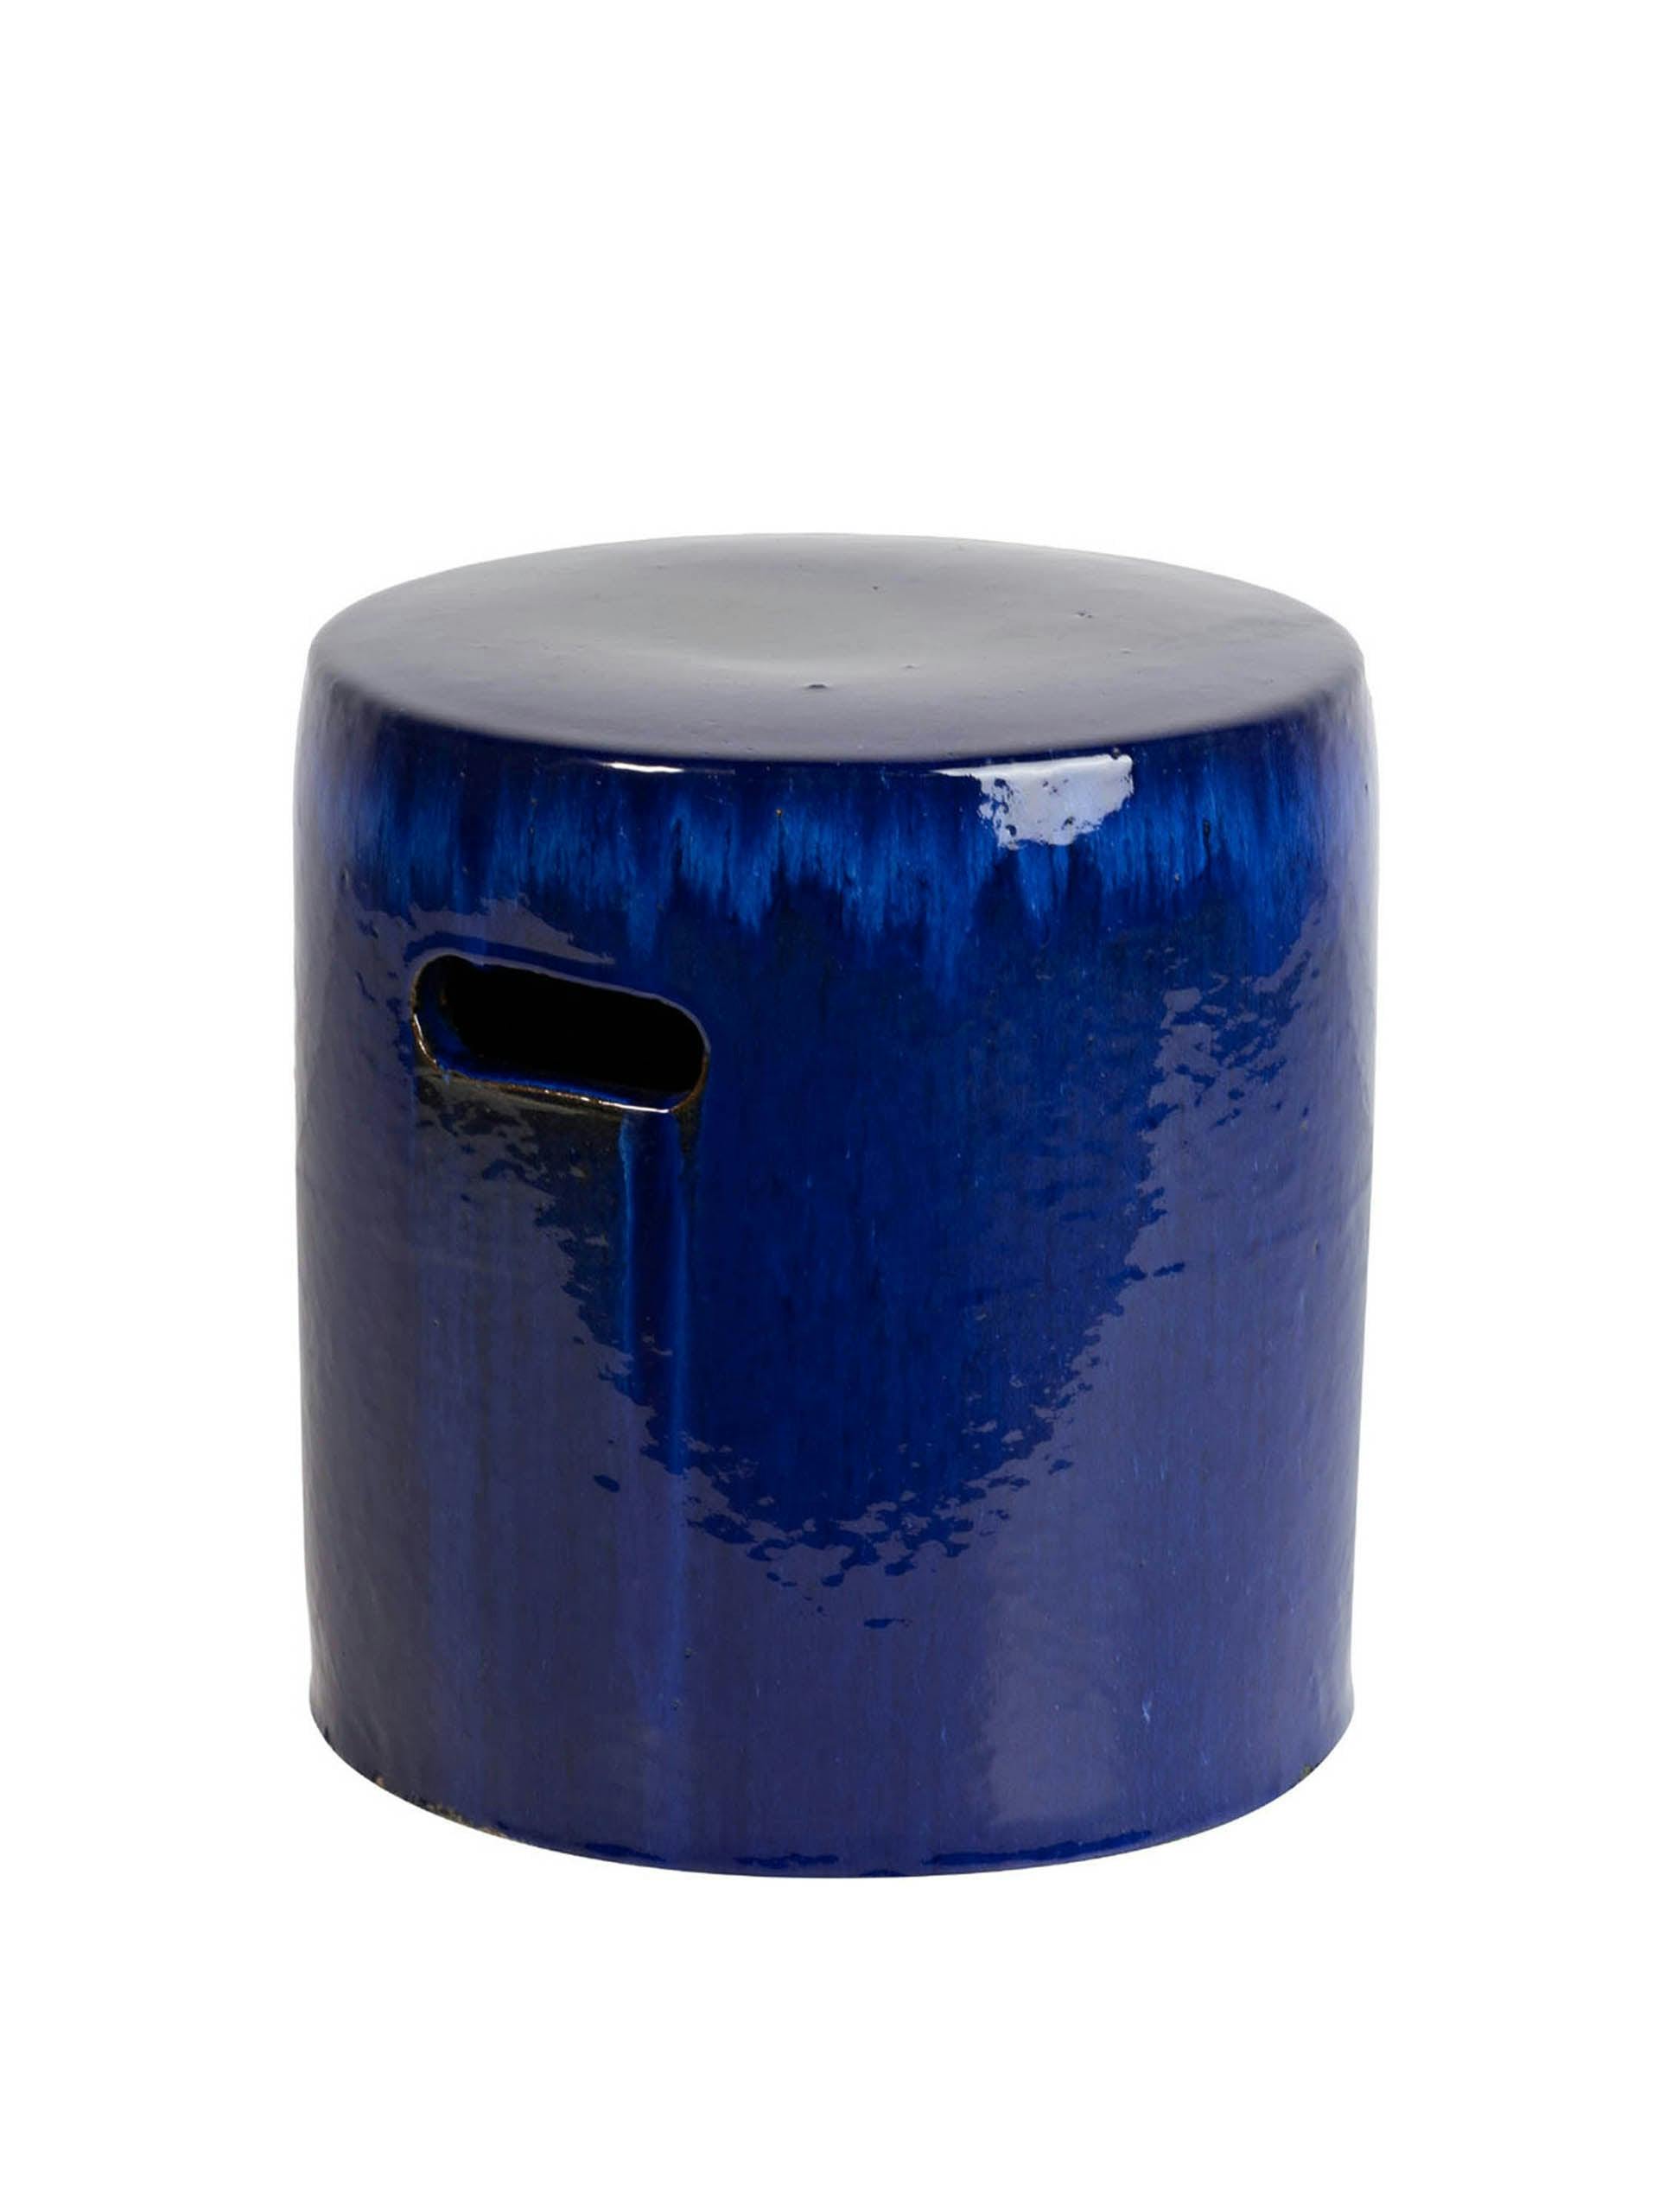 Tall blue ceramic stool